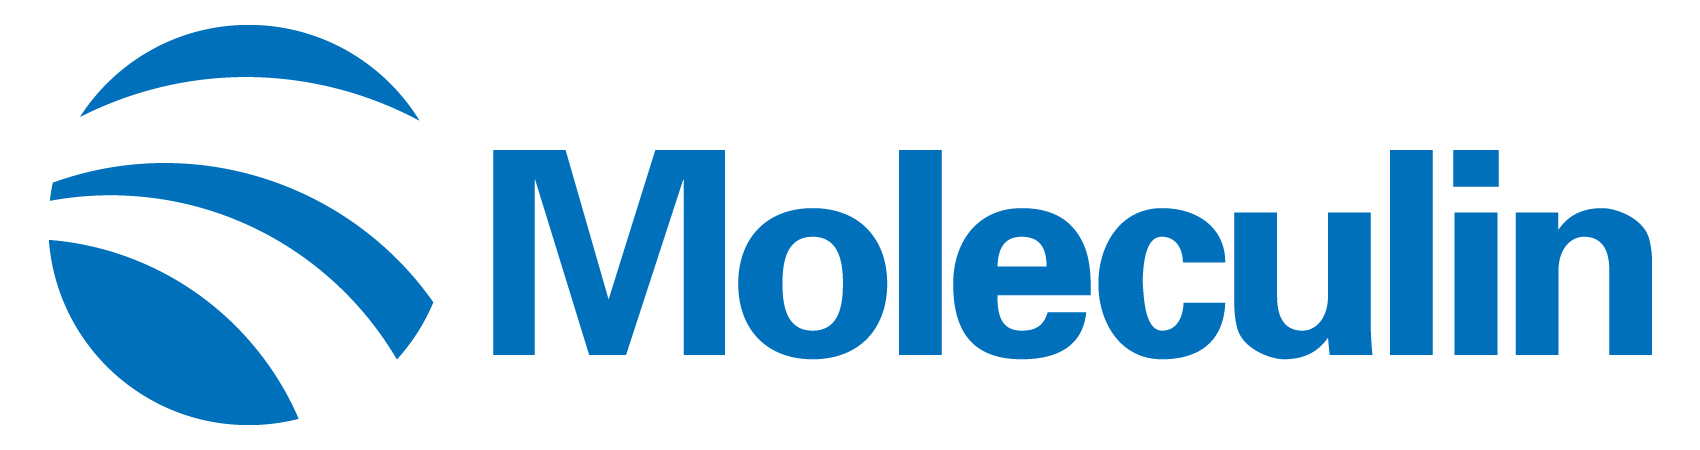 moleculin-logo_horiza29.jpg